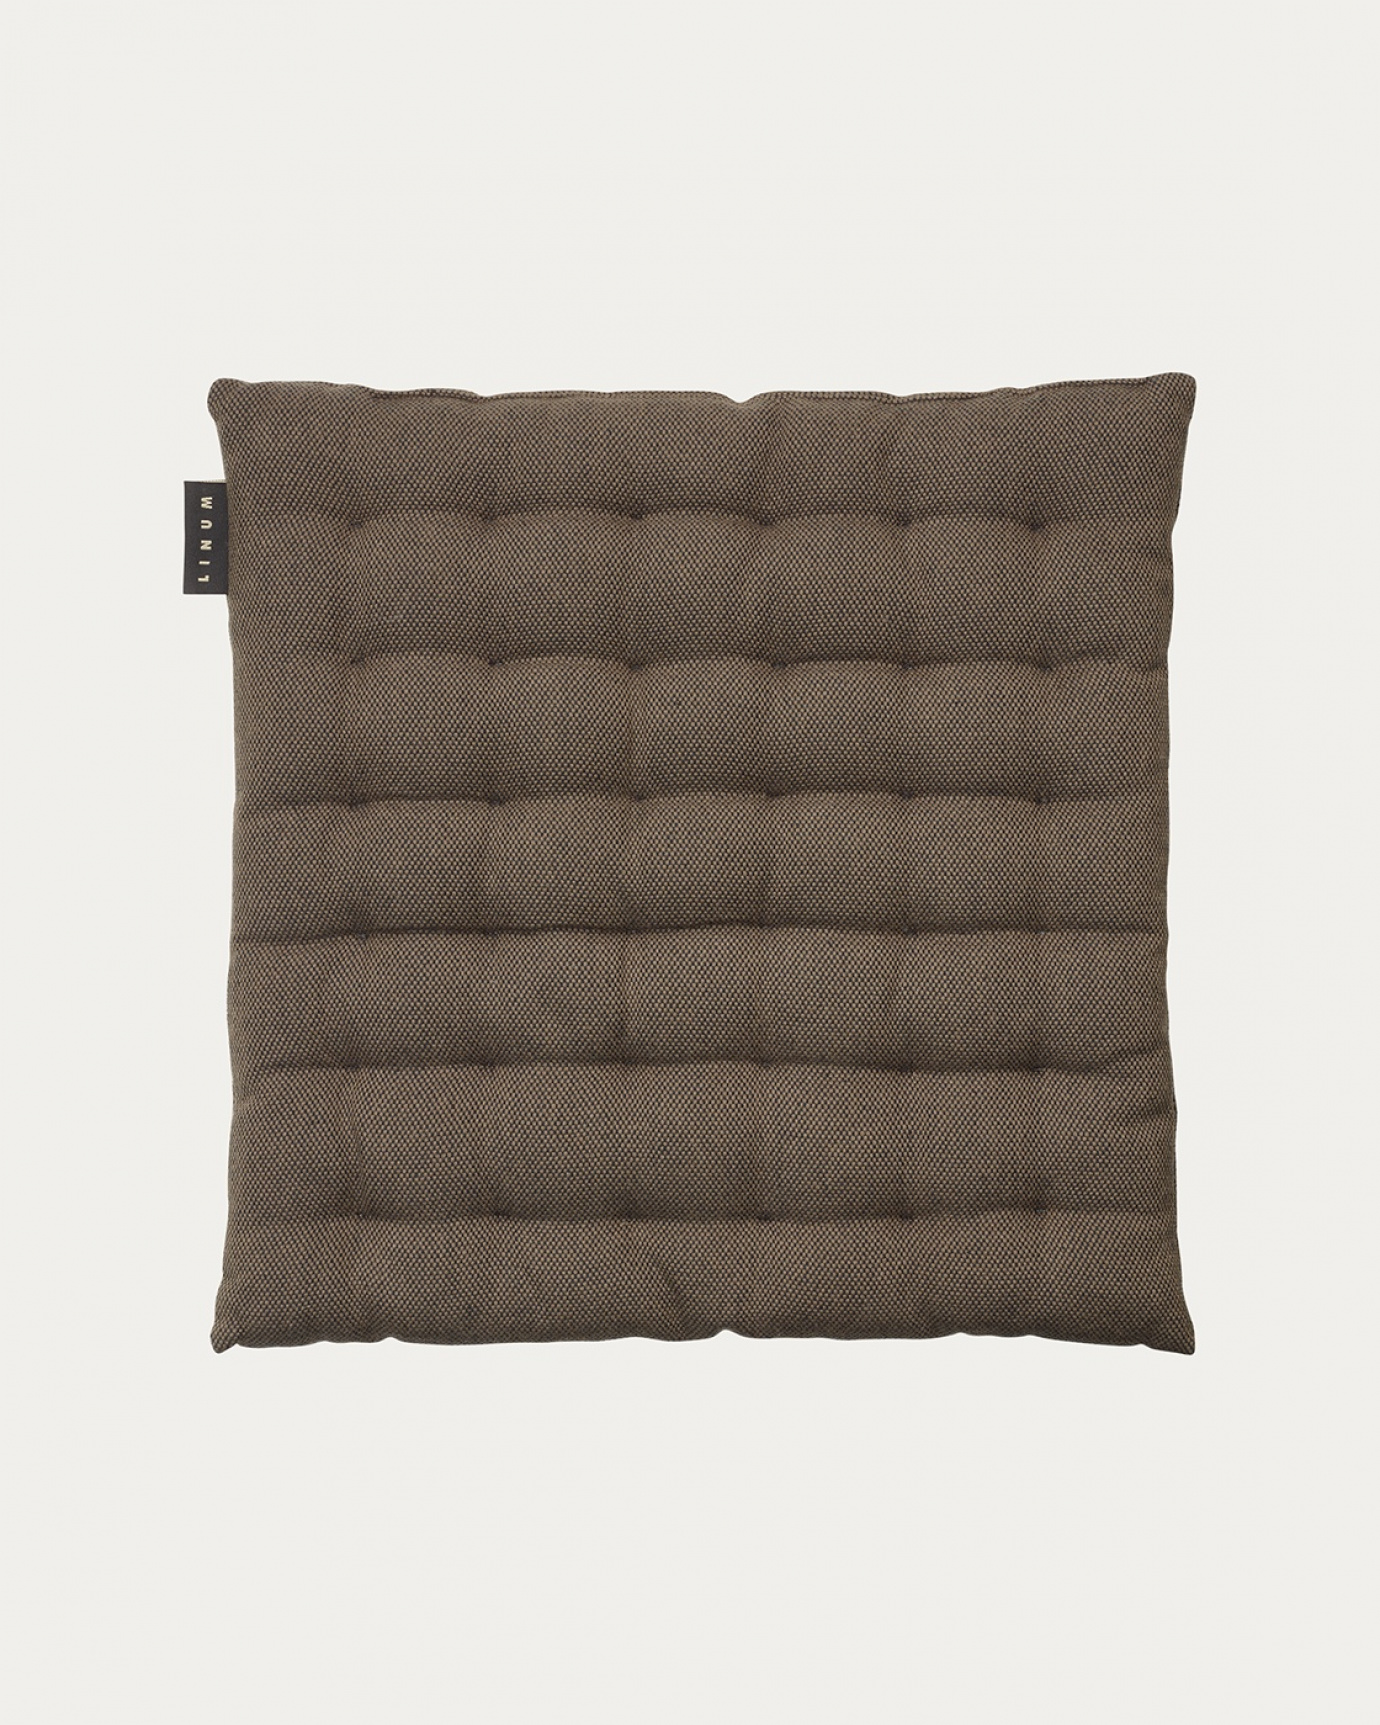 Immagine prodotto marrone orso PEPPER cuscini sedie di cotone con imbottitura in poliestere di LINUM DESIGN. Dimensioni 40x40 cm.